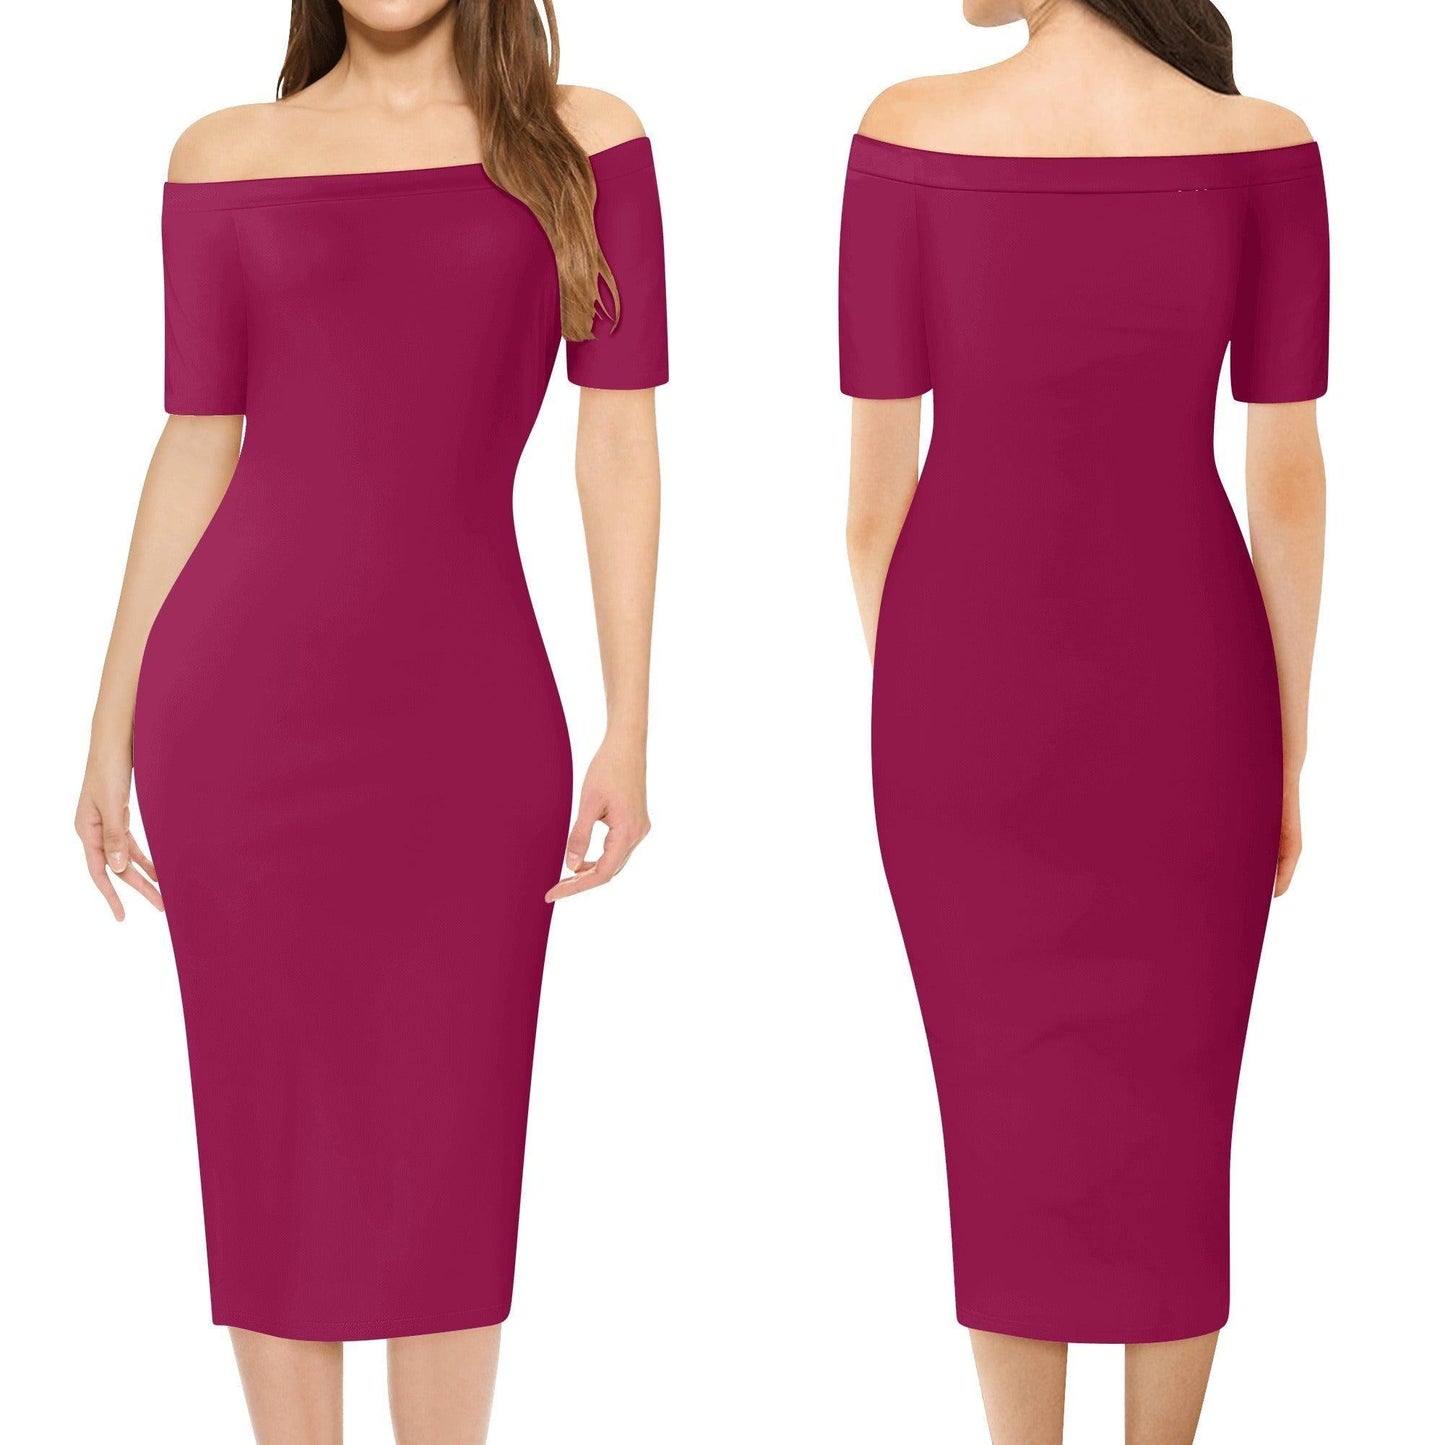 Burgund Off-Shoulder-Kleid -- Burgund Off-Shoulder-Kleid - undefined Off-Shoulder-Kleid | JLR Design